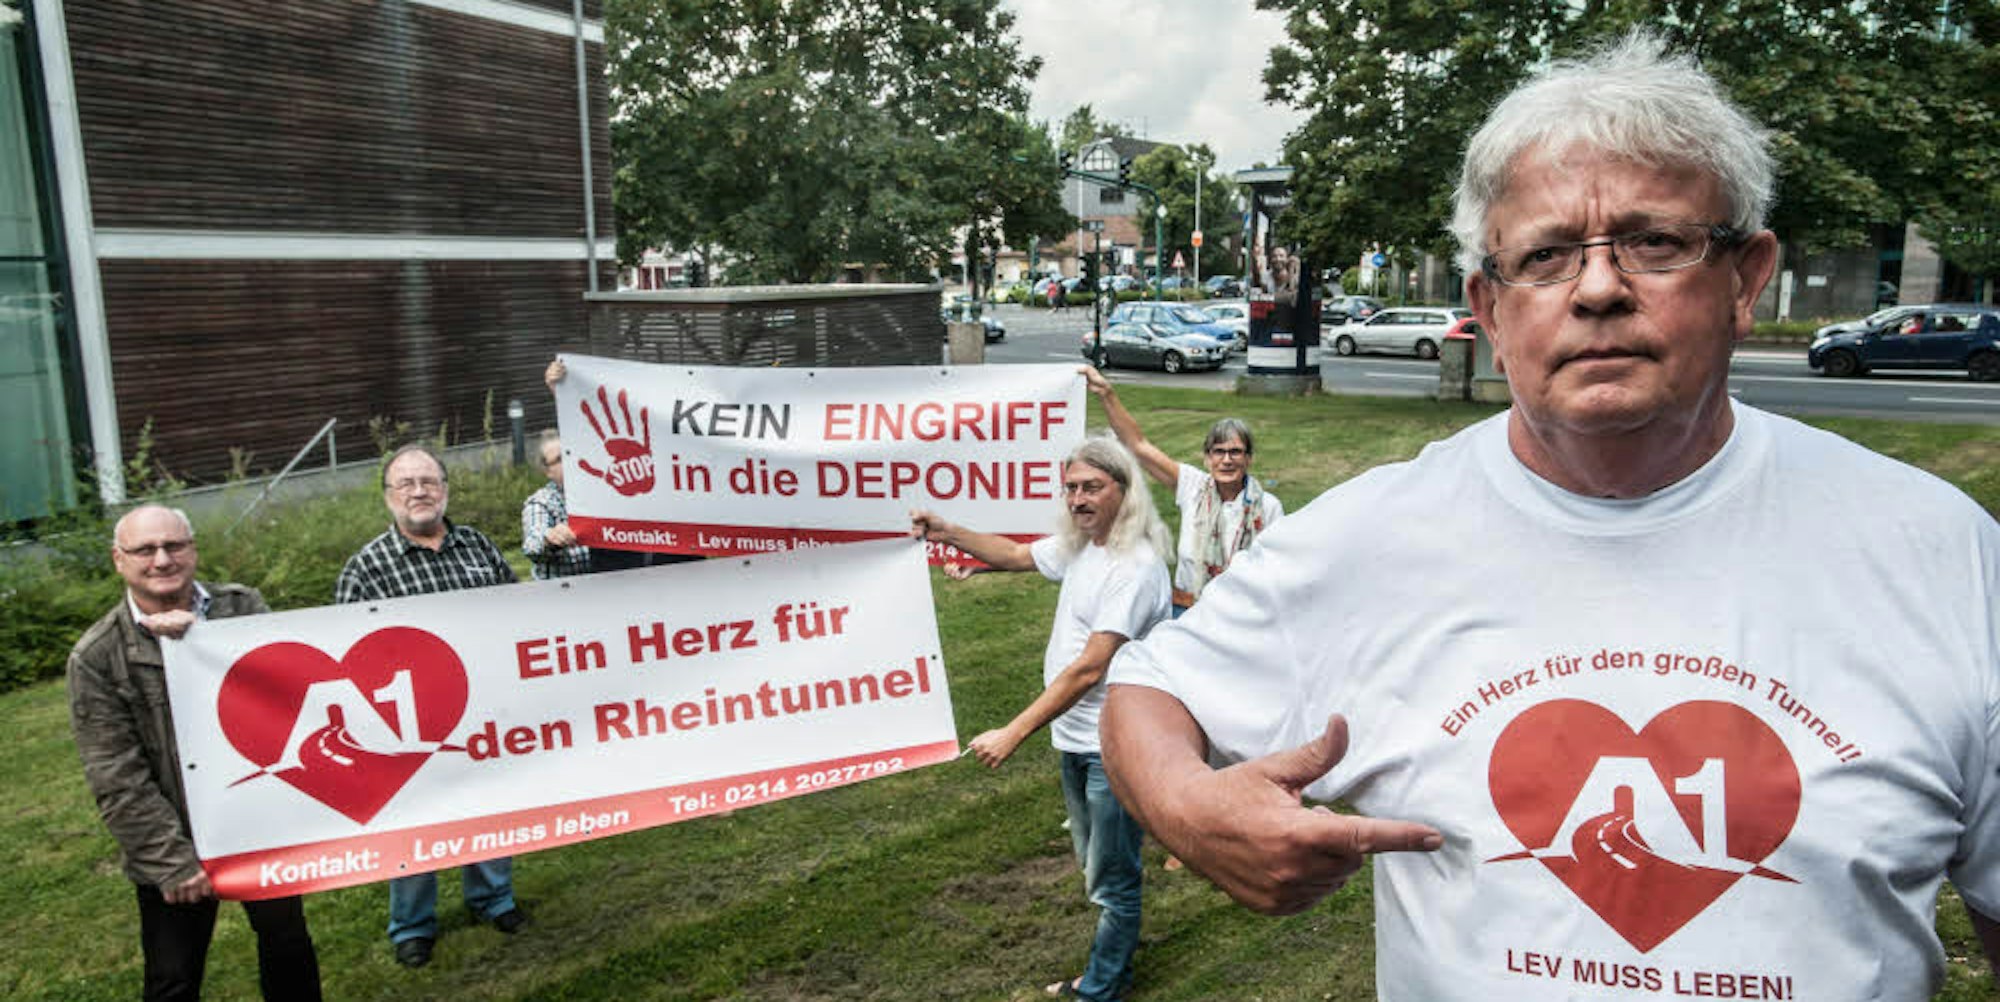 Transparente für Bürrig und Rheindorf, T-Shirts für alle. Manfred Schröder und Mitstreiter.